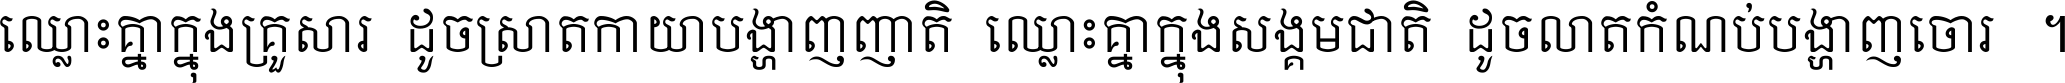 Khmer Mondulkiri-s